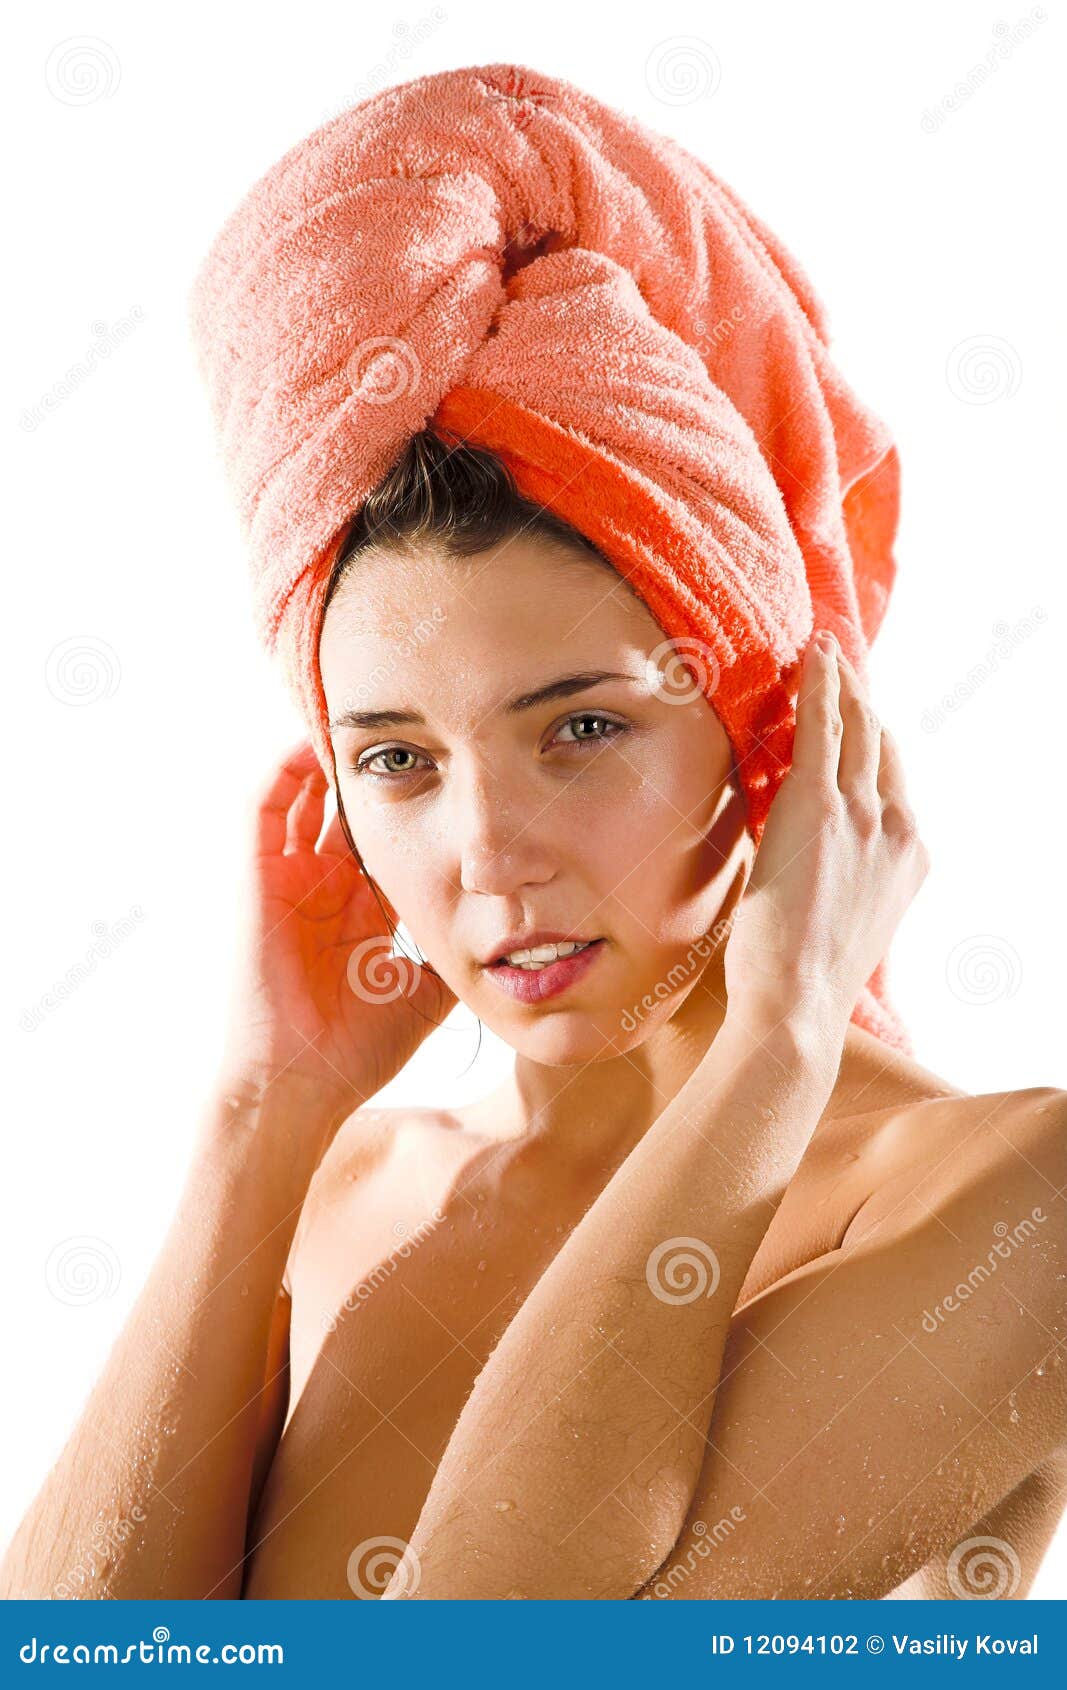 Обернутая полотенцем. Полотенце на голове. Девушка с полотенцем на голове. Девушки обмотаны полотенцем.